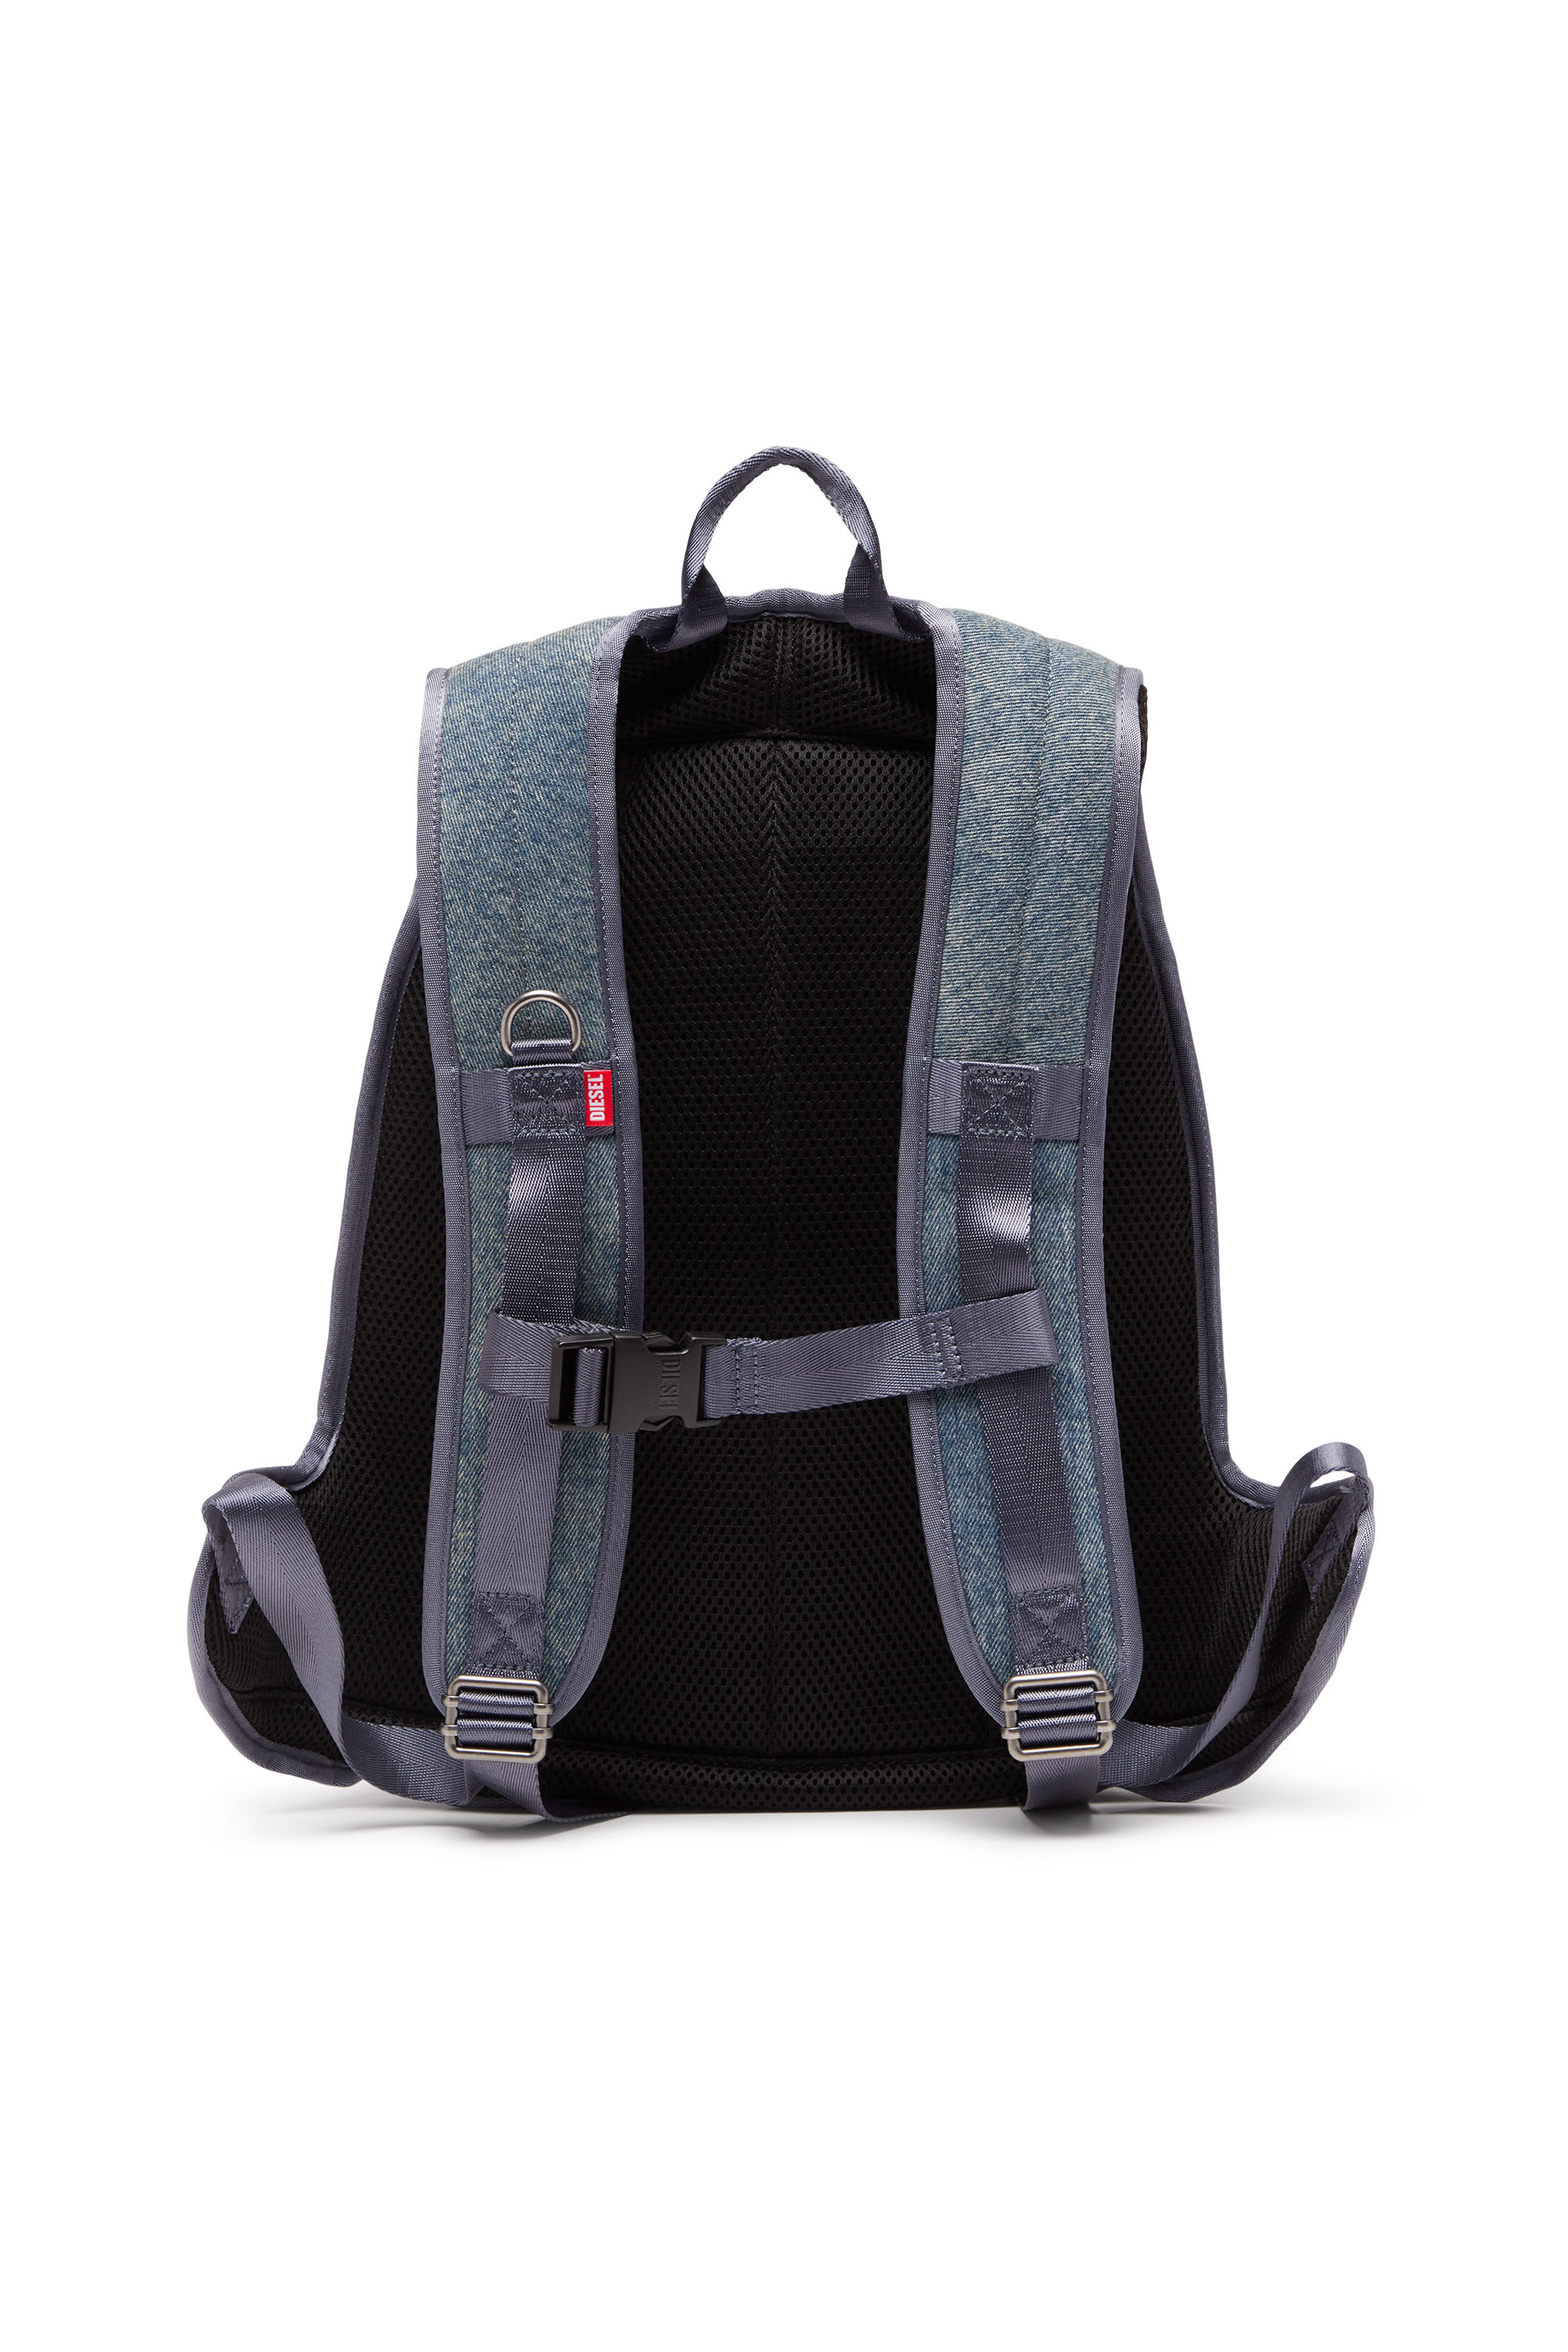 Diesel - 1DR-POD BACKPACK, Man 1DR-Pod Backpack - Hard shell denim backpack in Multicolor - Image 2